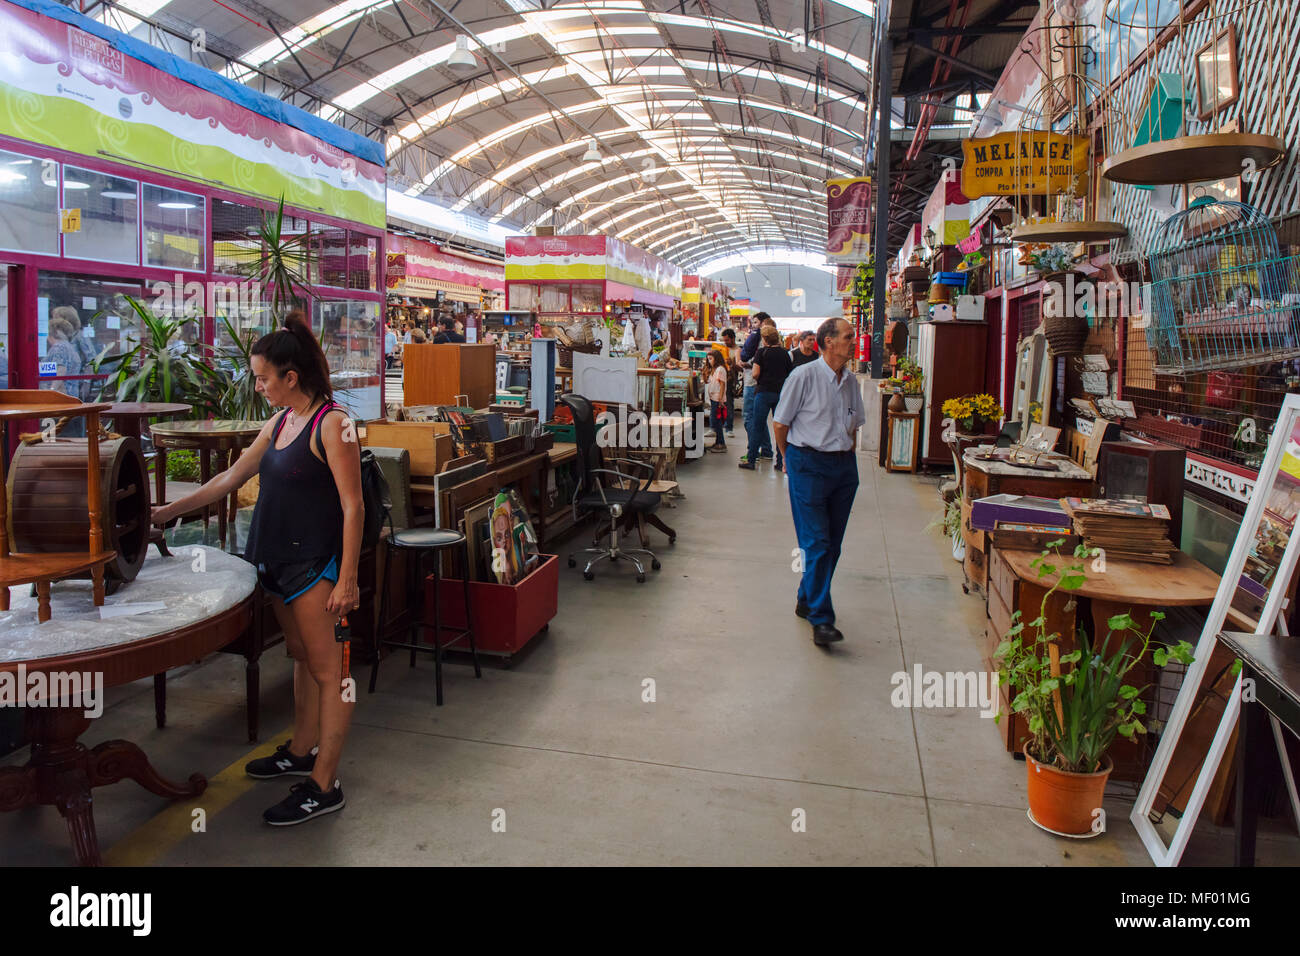 People visiting the "Flea market" (Mercado de las Pulgas) in Buenos Aires, Argentina. Stock Photo